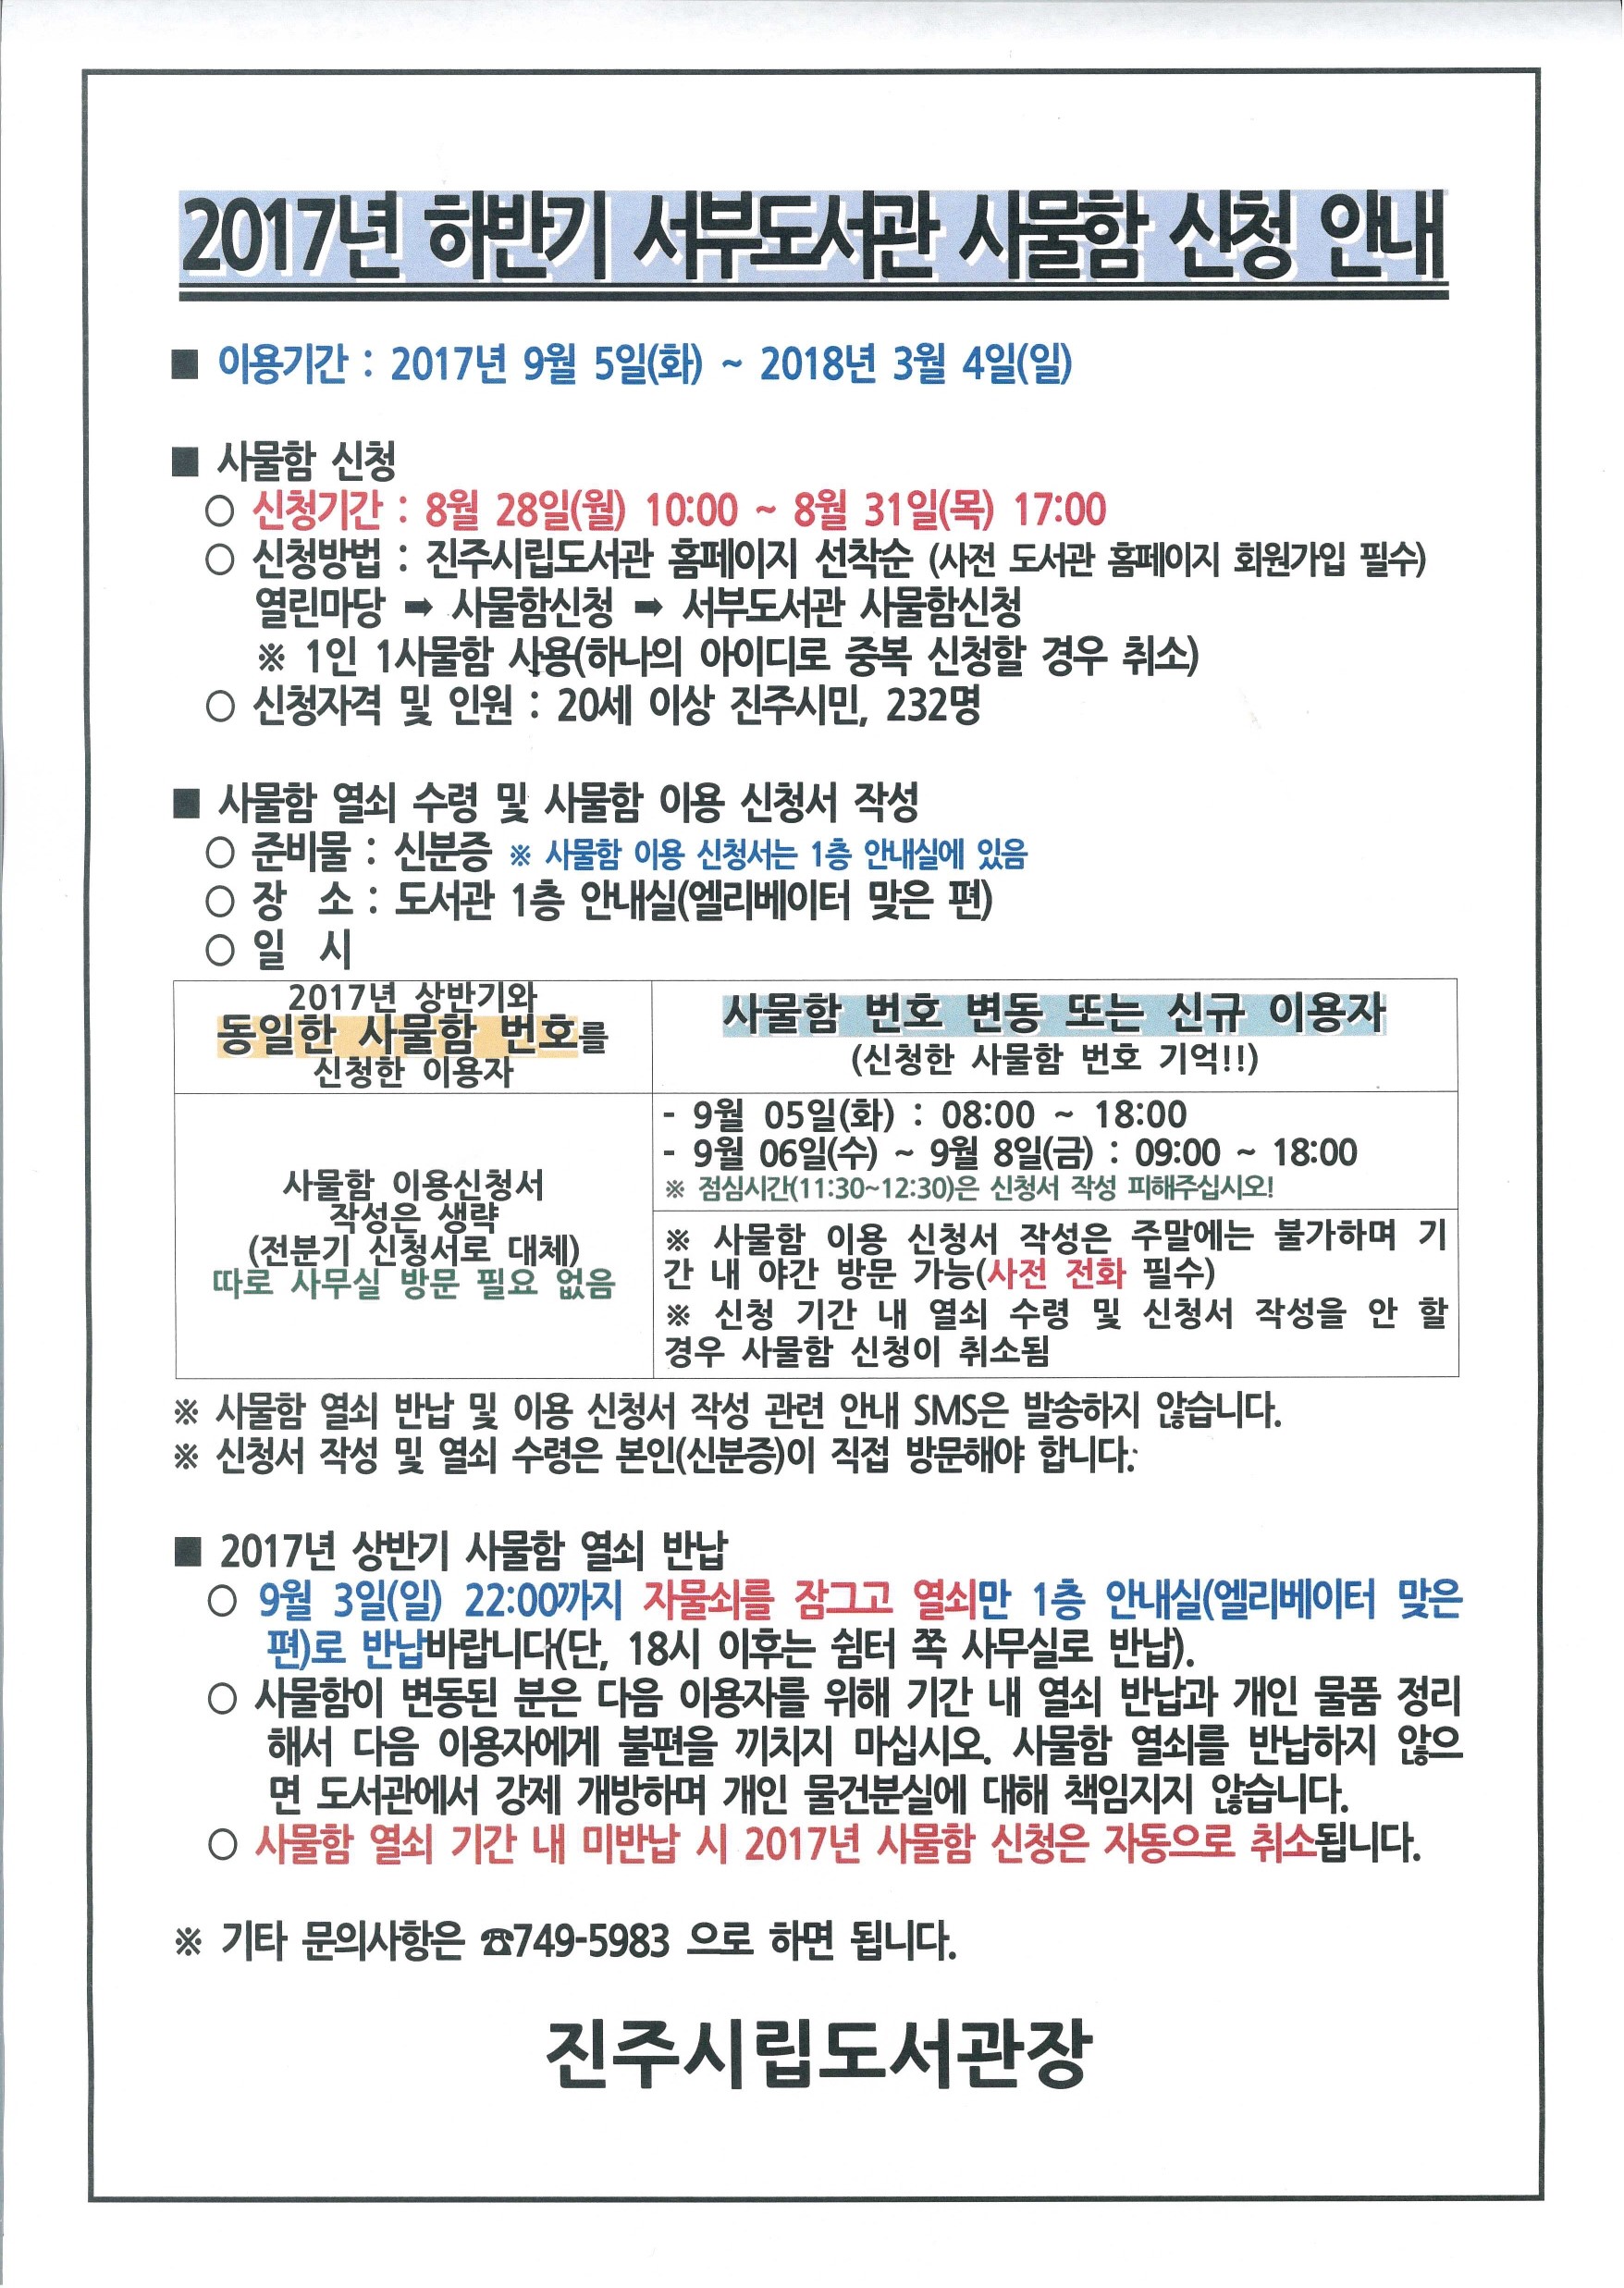 서부도서관 2017년 하반기 사물함 신청 안내